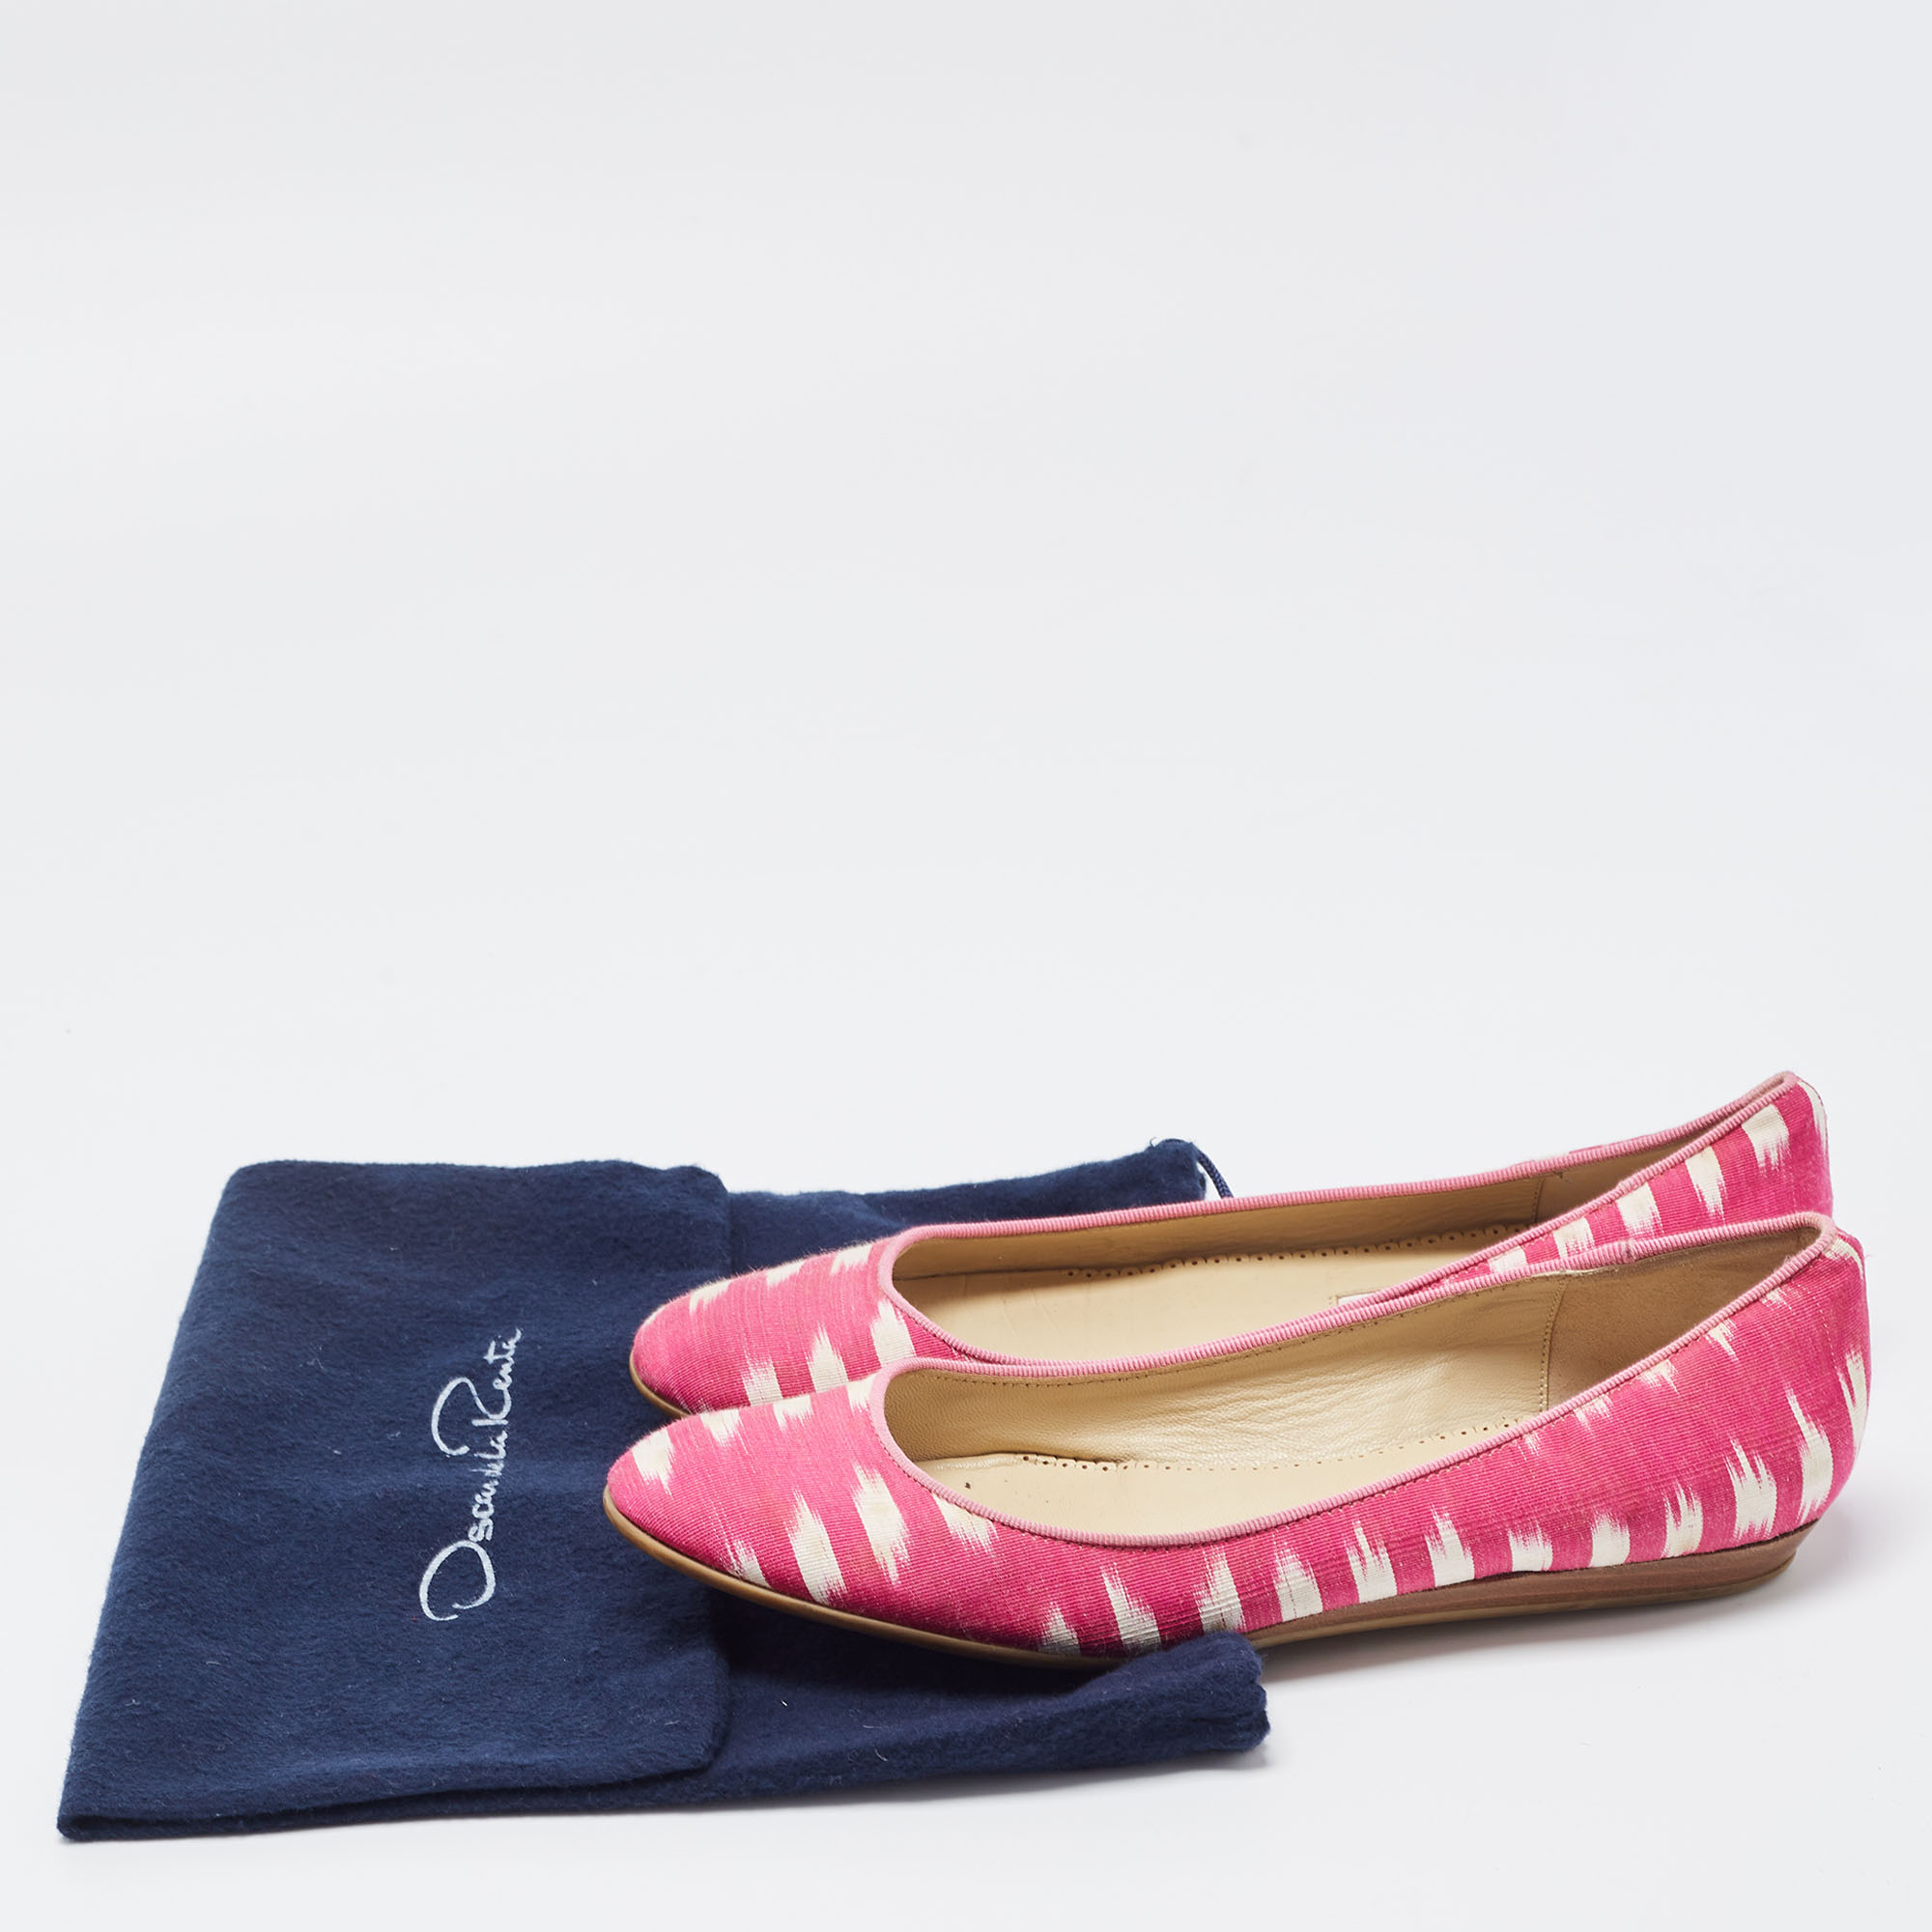 Oscar De La Renta Pink Printed Fabric Ballet Flats Size 36.5